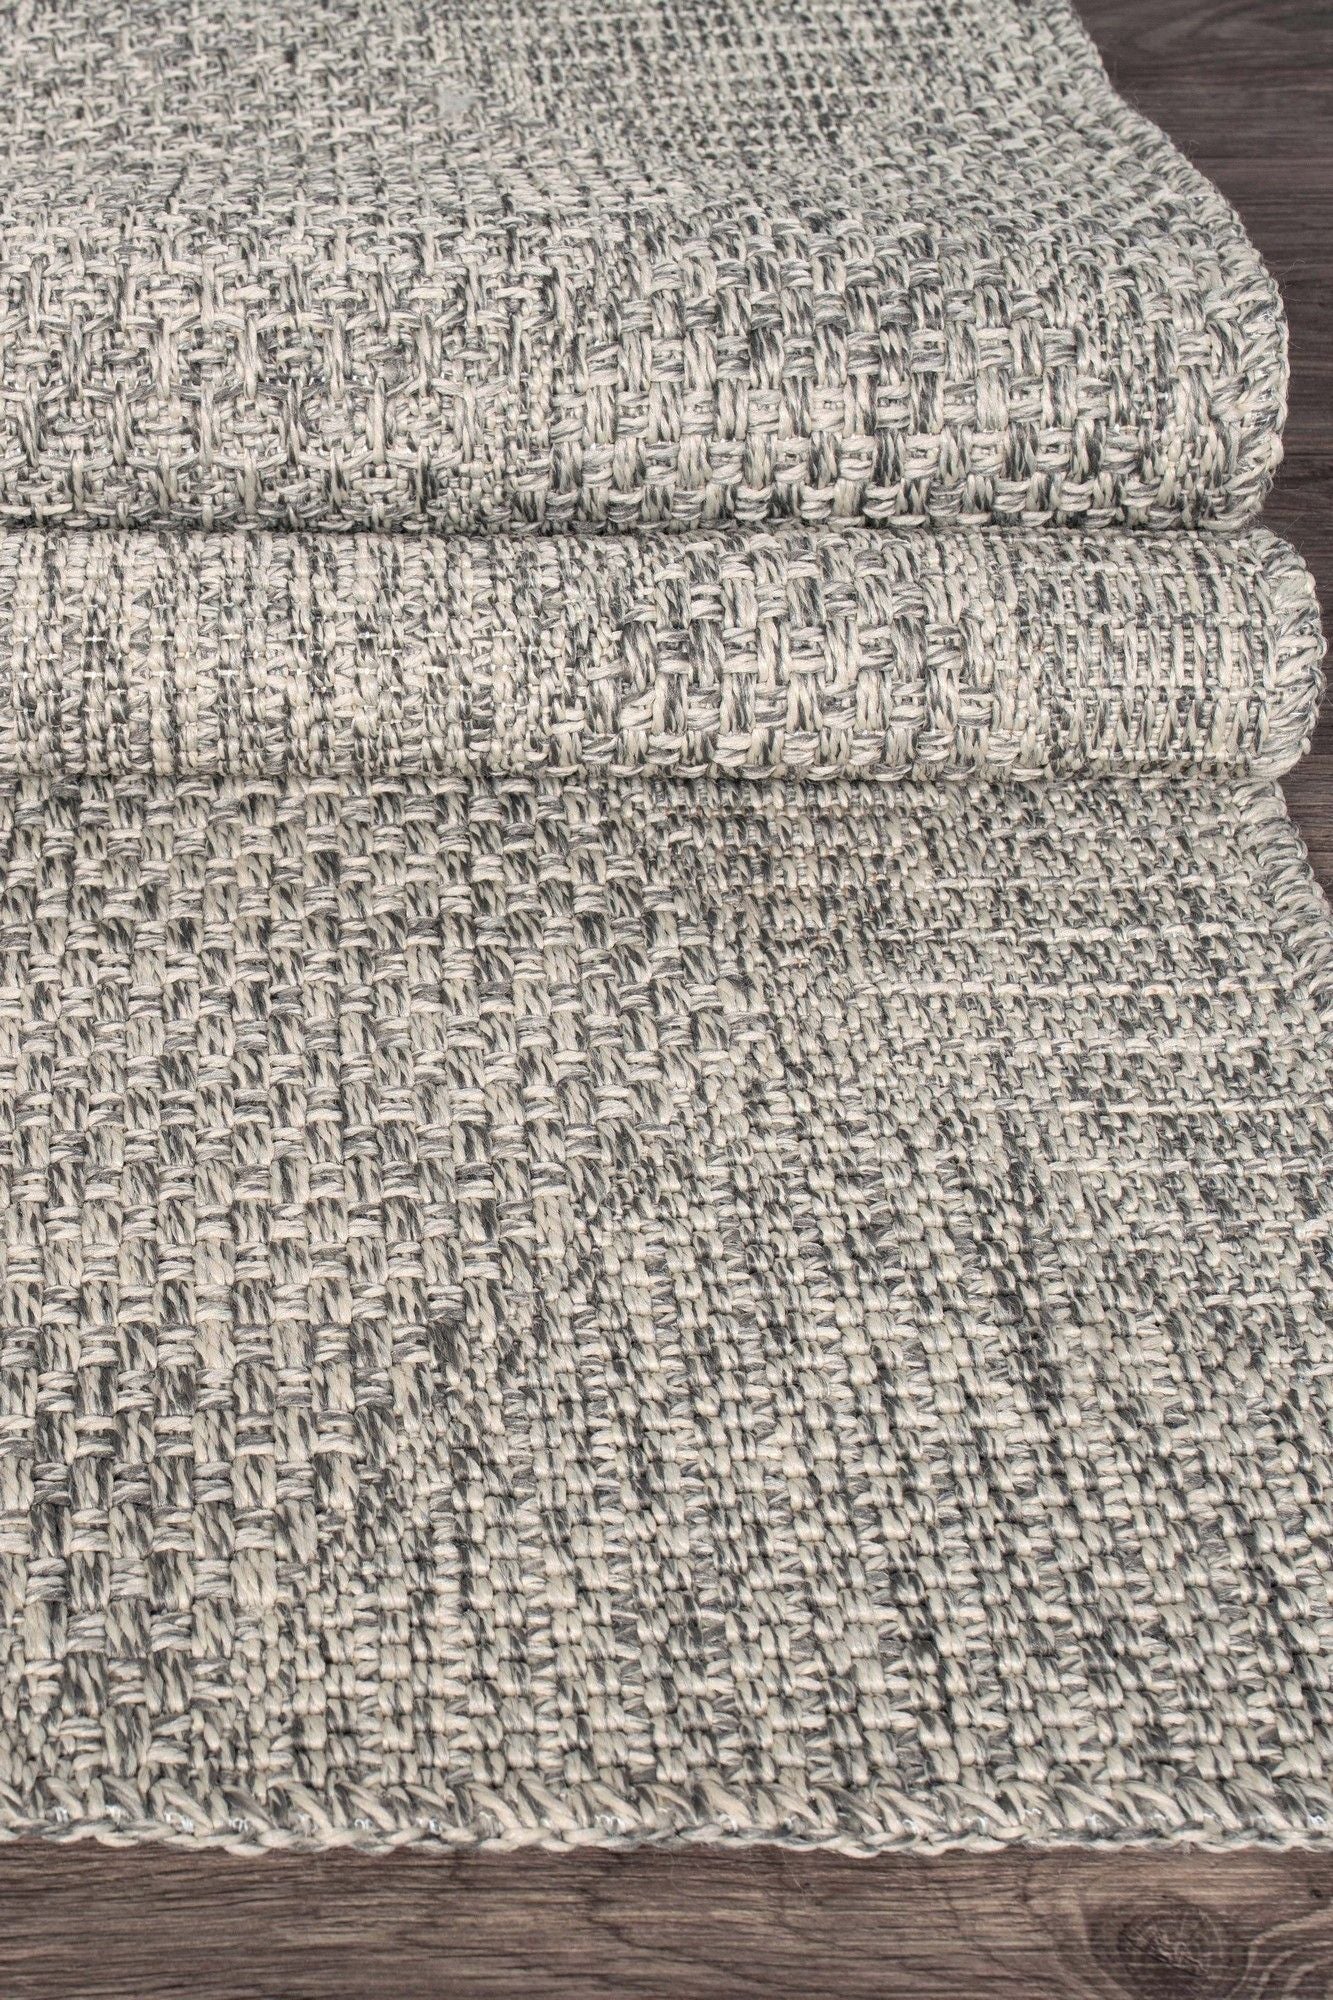 Rusticana 3104 - Hall Carpet (200 x 400)